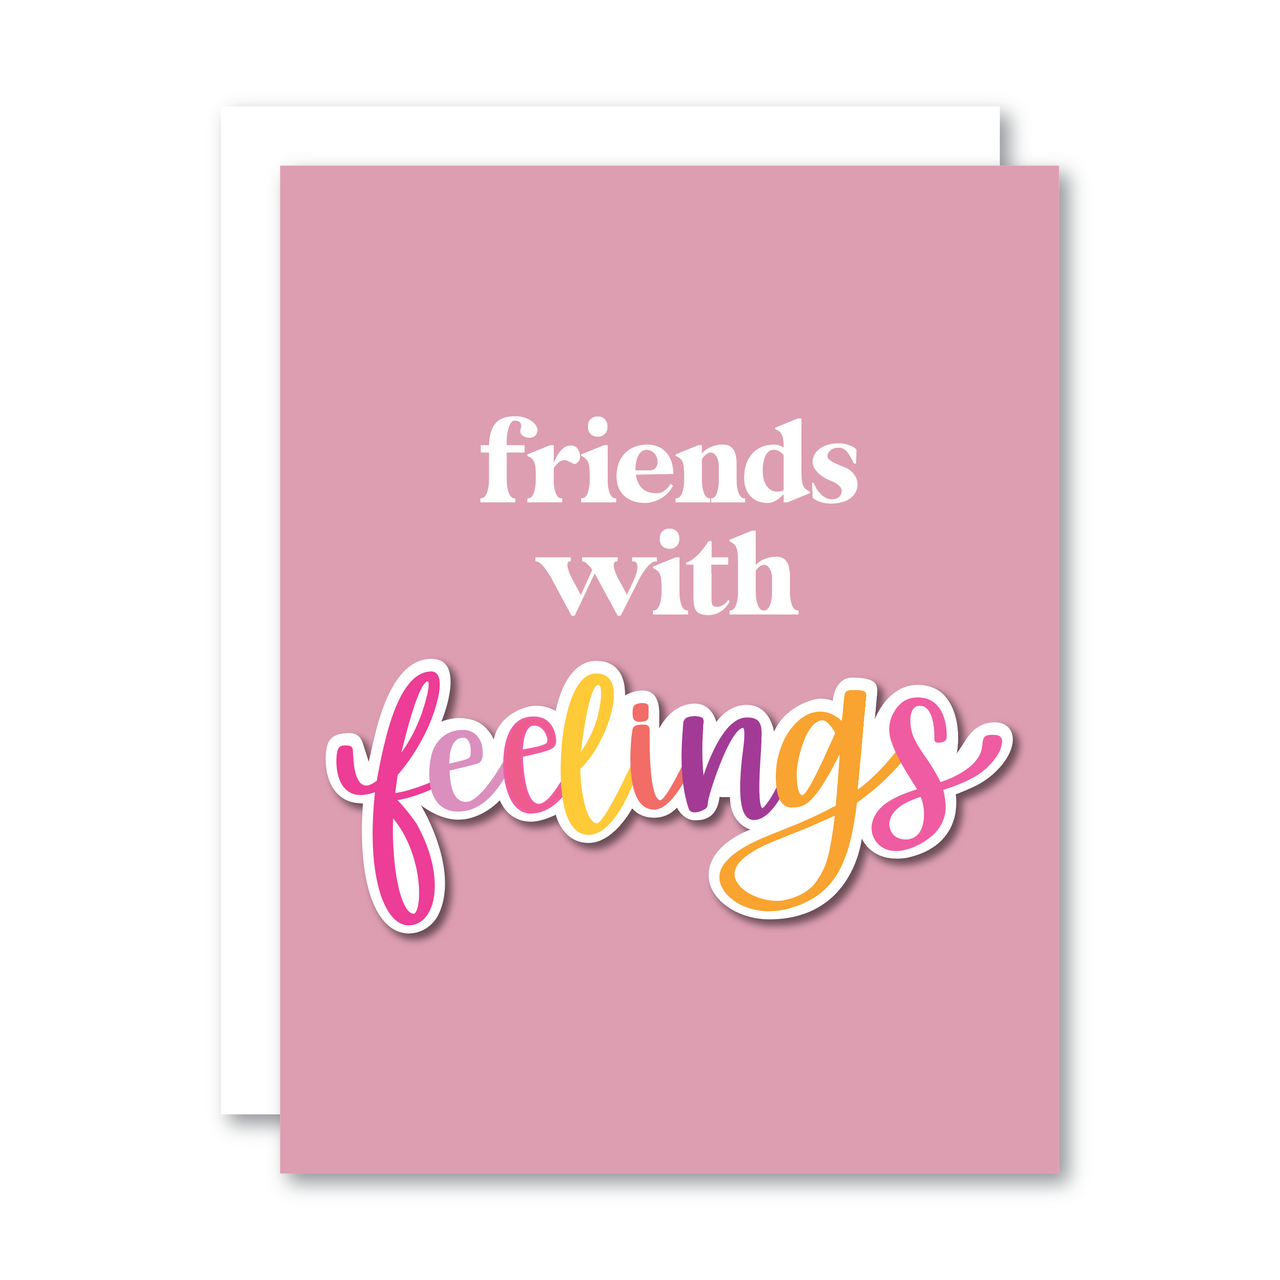 Friends with 'feelings'